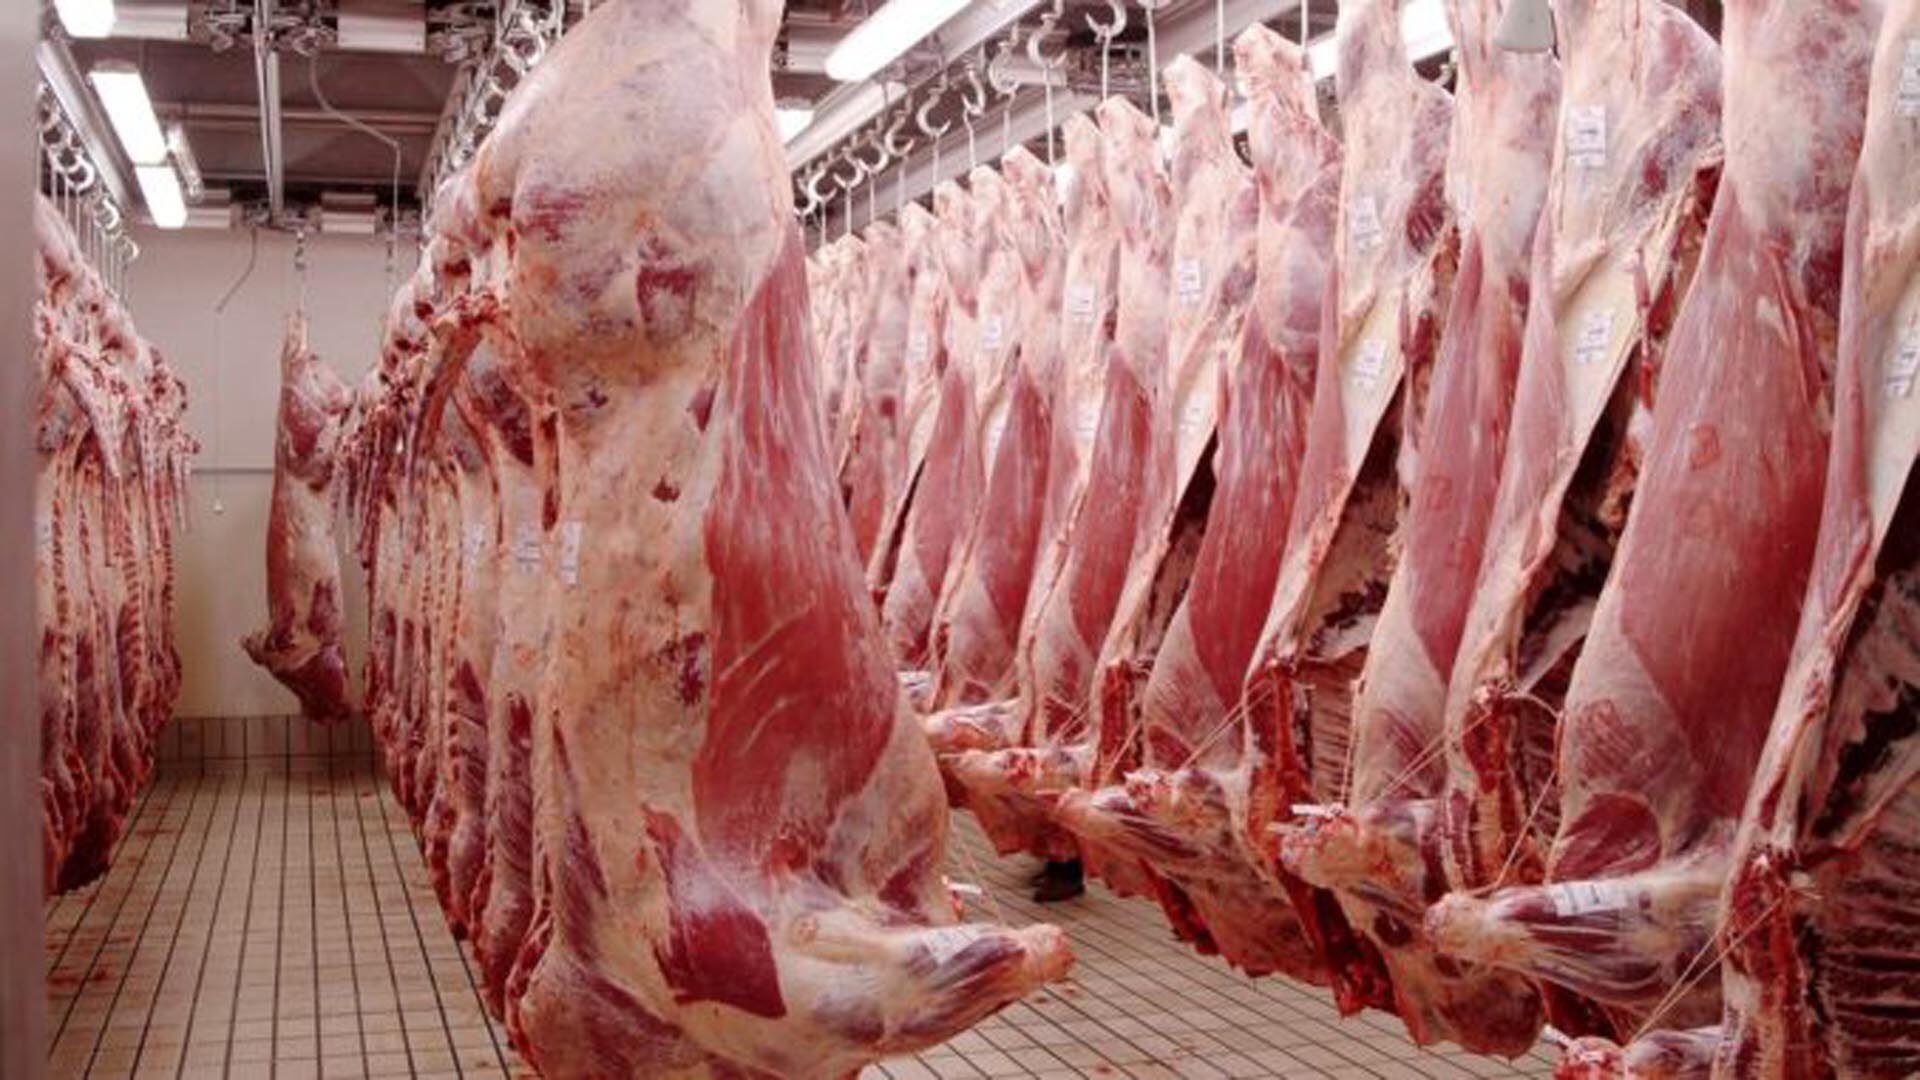 Siguen cayendo las exportaciones de carne vacuna y Argentina desaprovecha un escenario de altos precios internacionales. 